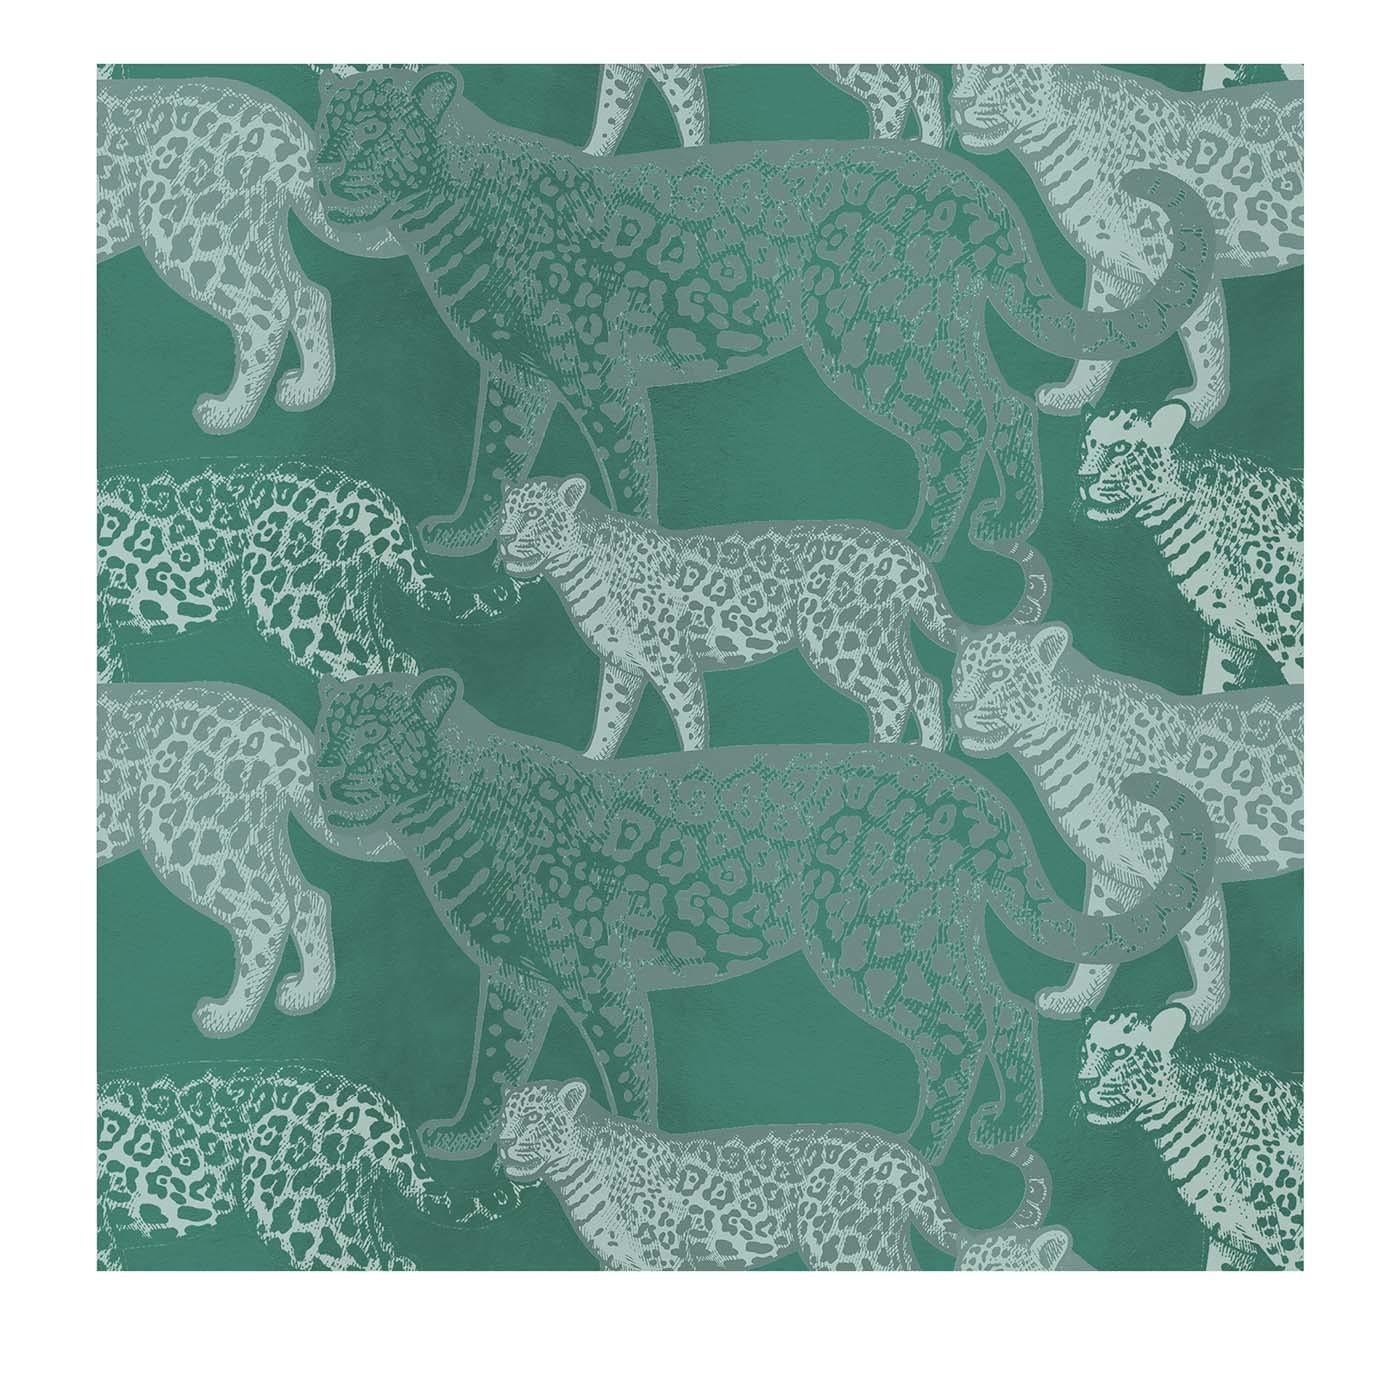 Walking Leopards Green Panel #2